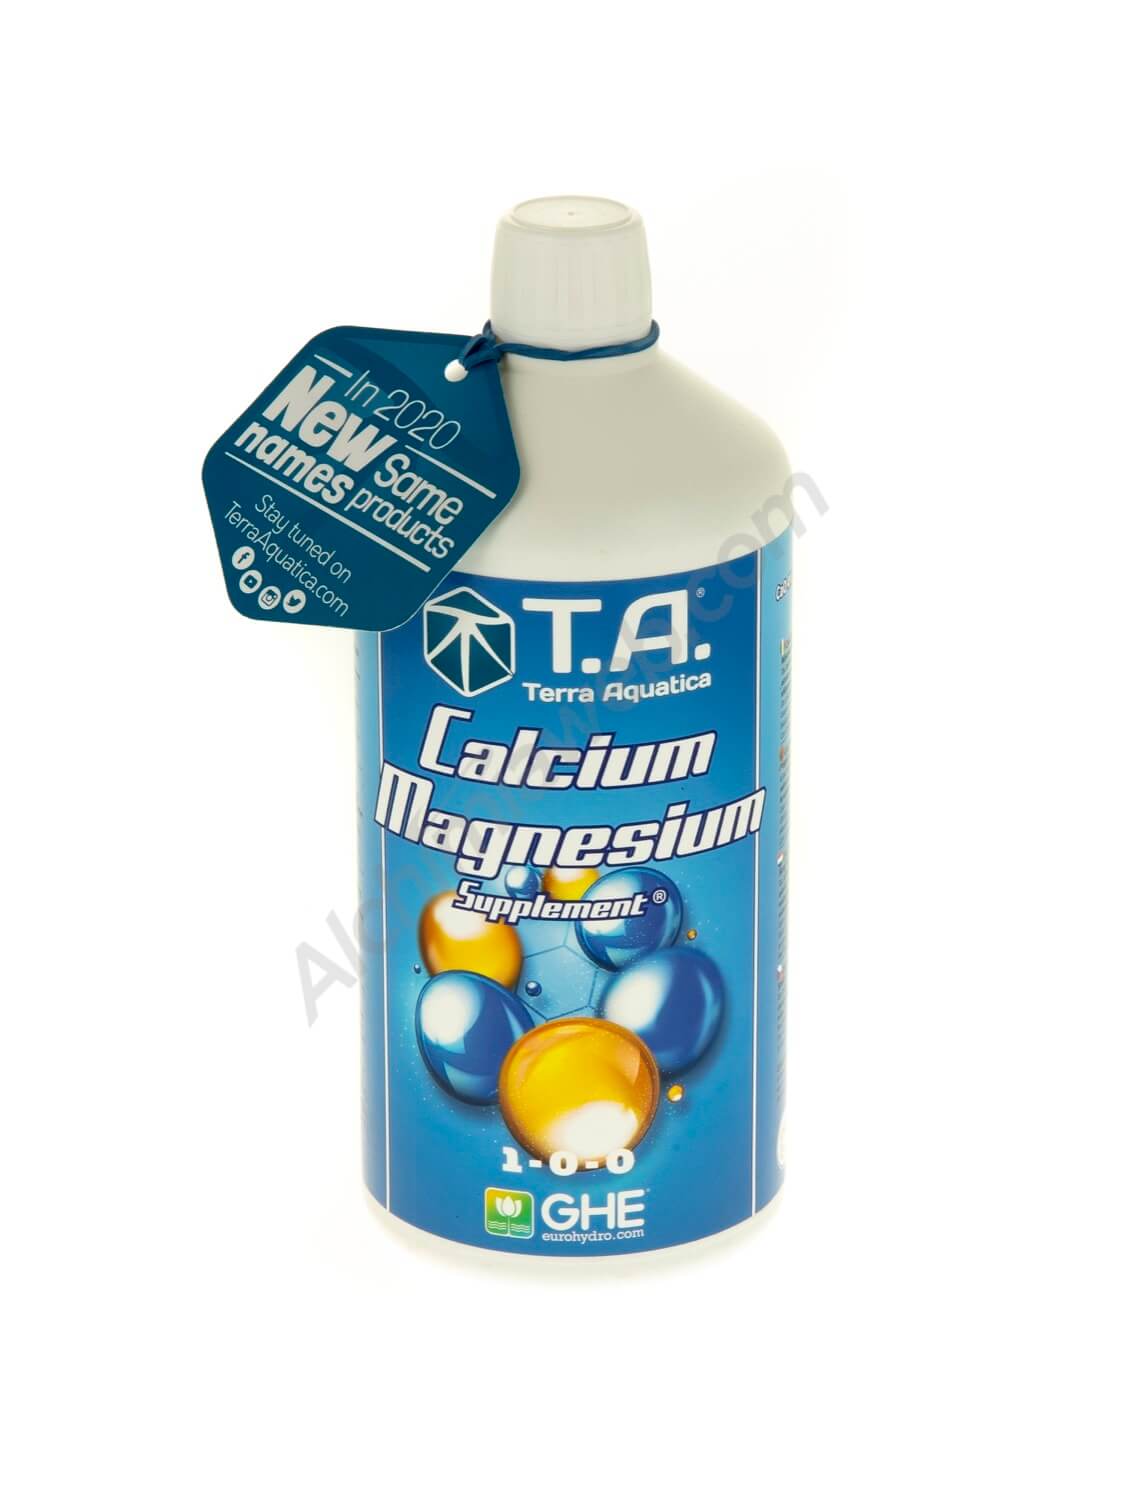 Calcium Magnesium Supplement, de Terra Aquatica